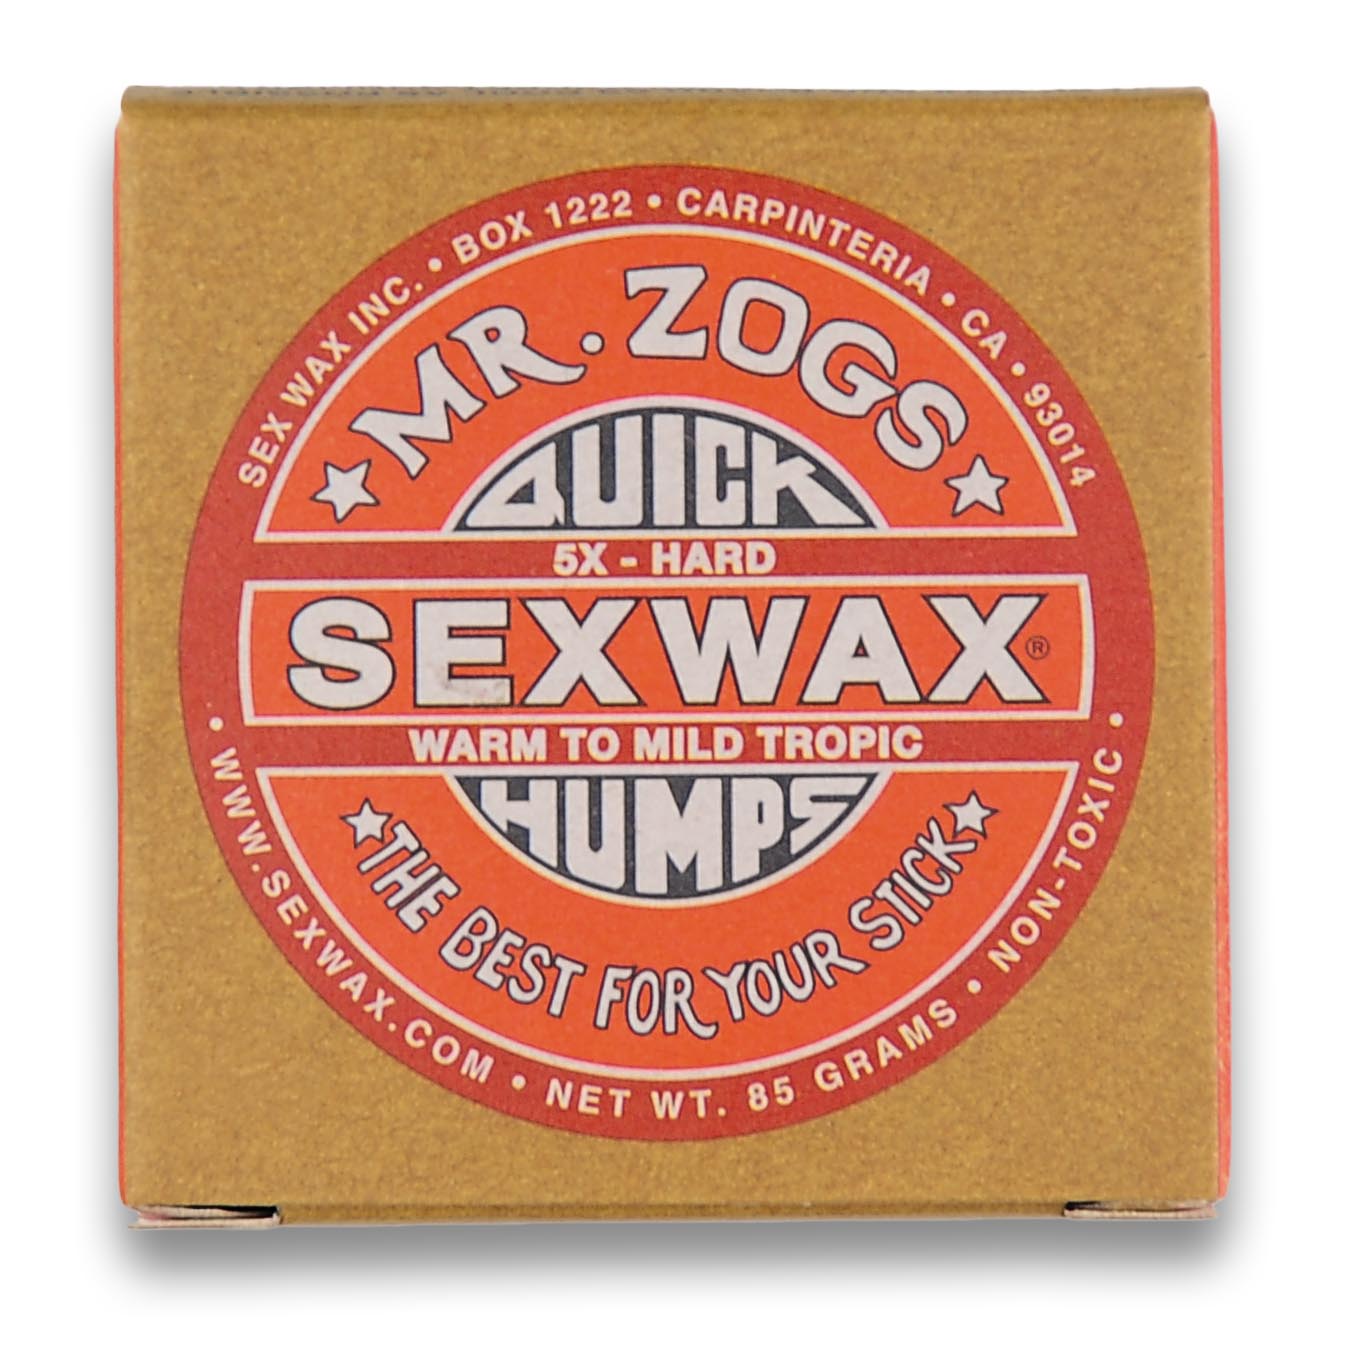 Sex Wax Quick Humps 5X Hard Surf Wax